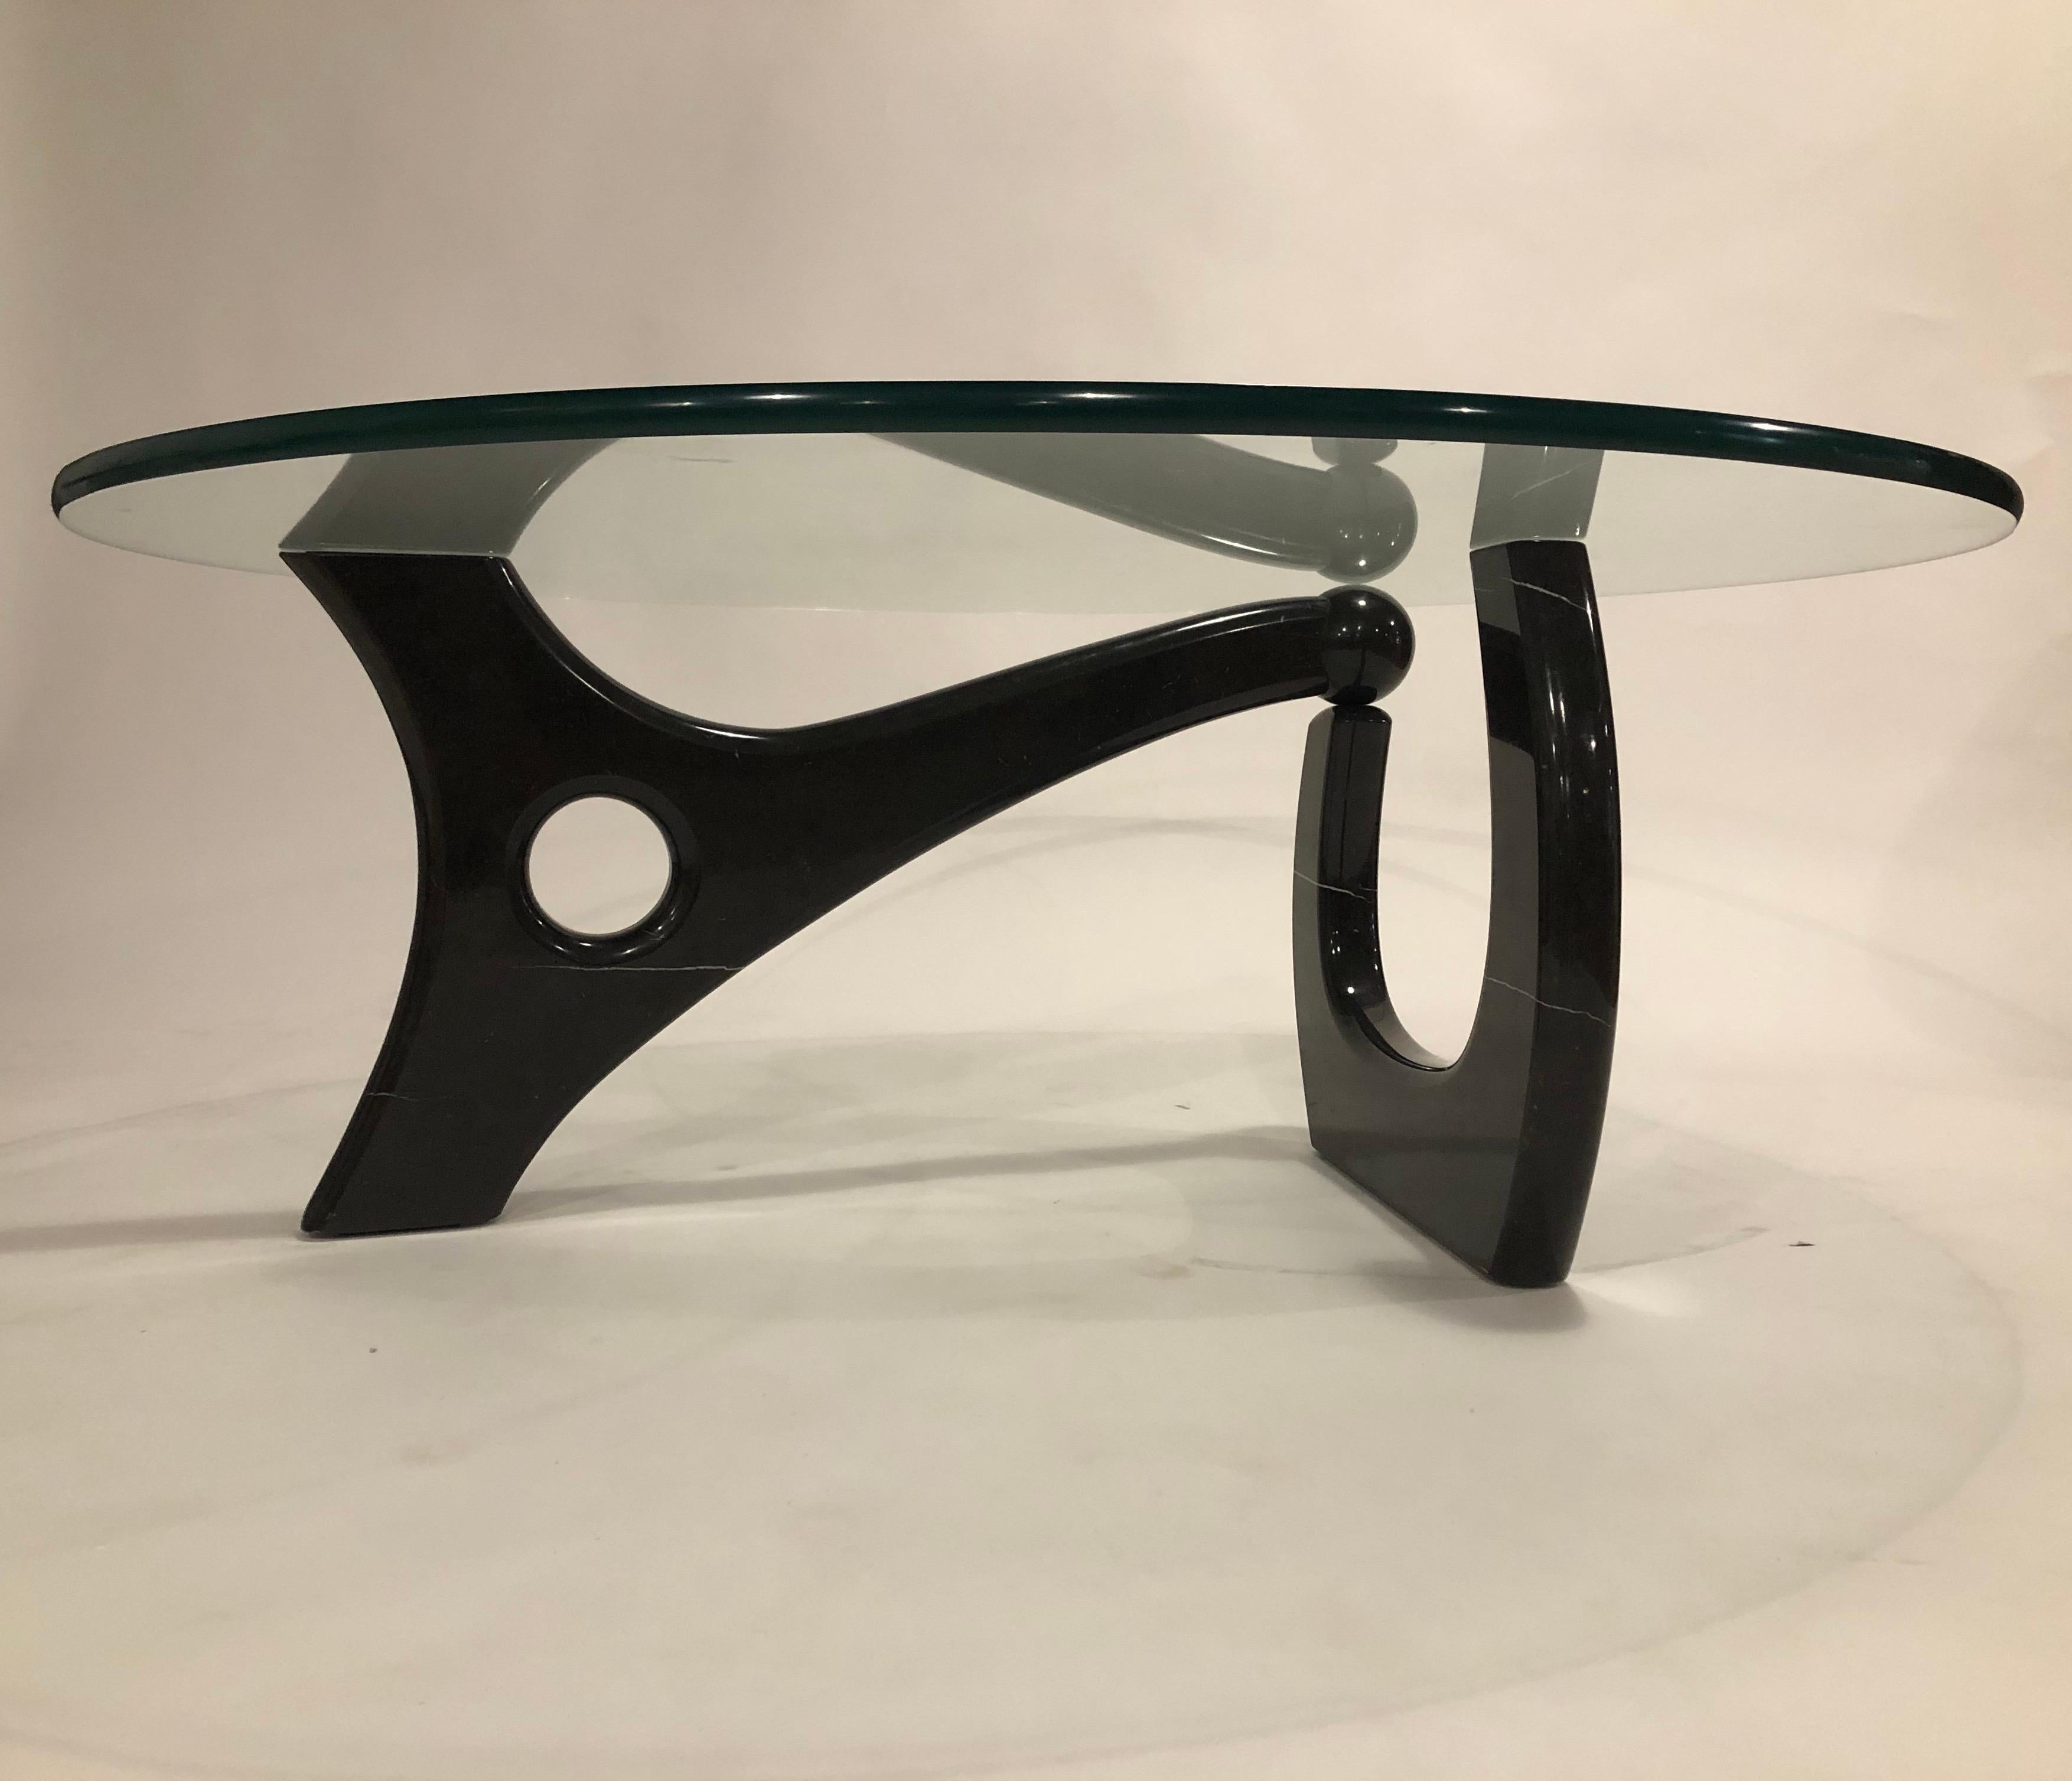 Table de cocktail de style Noguchi et de conception postmoderne, conçue par le célèbre designer de Chicago Richard Himmel, en onyx et en verre. De la propriété de la famille Himmel à Chicago. Il date probablement du début des années 1980. Représenté